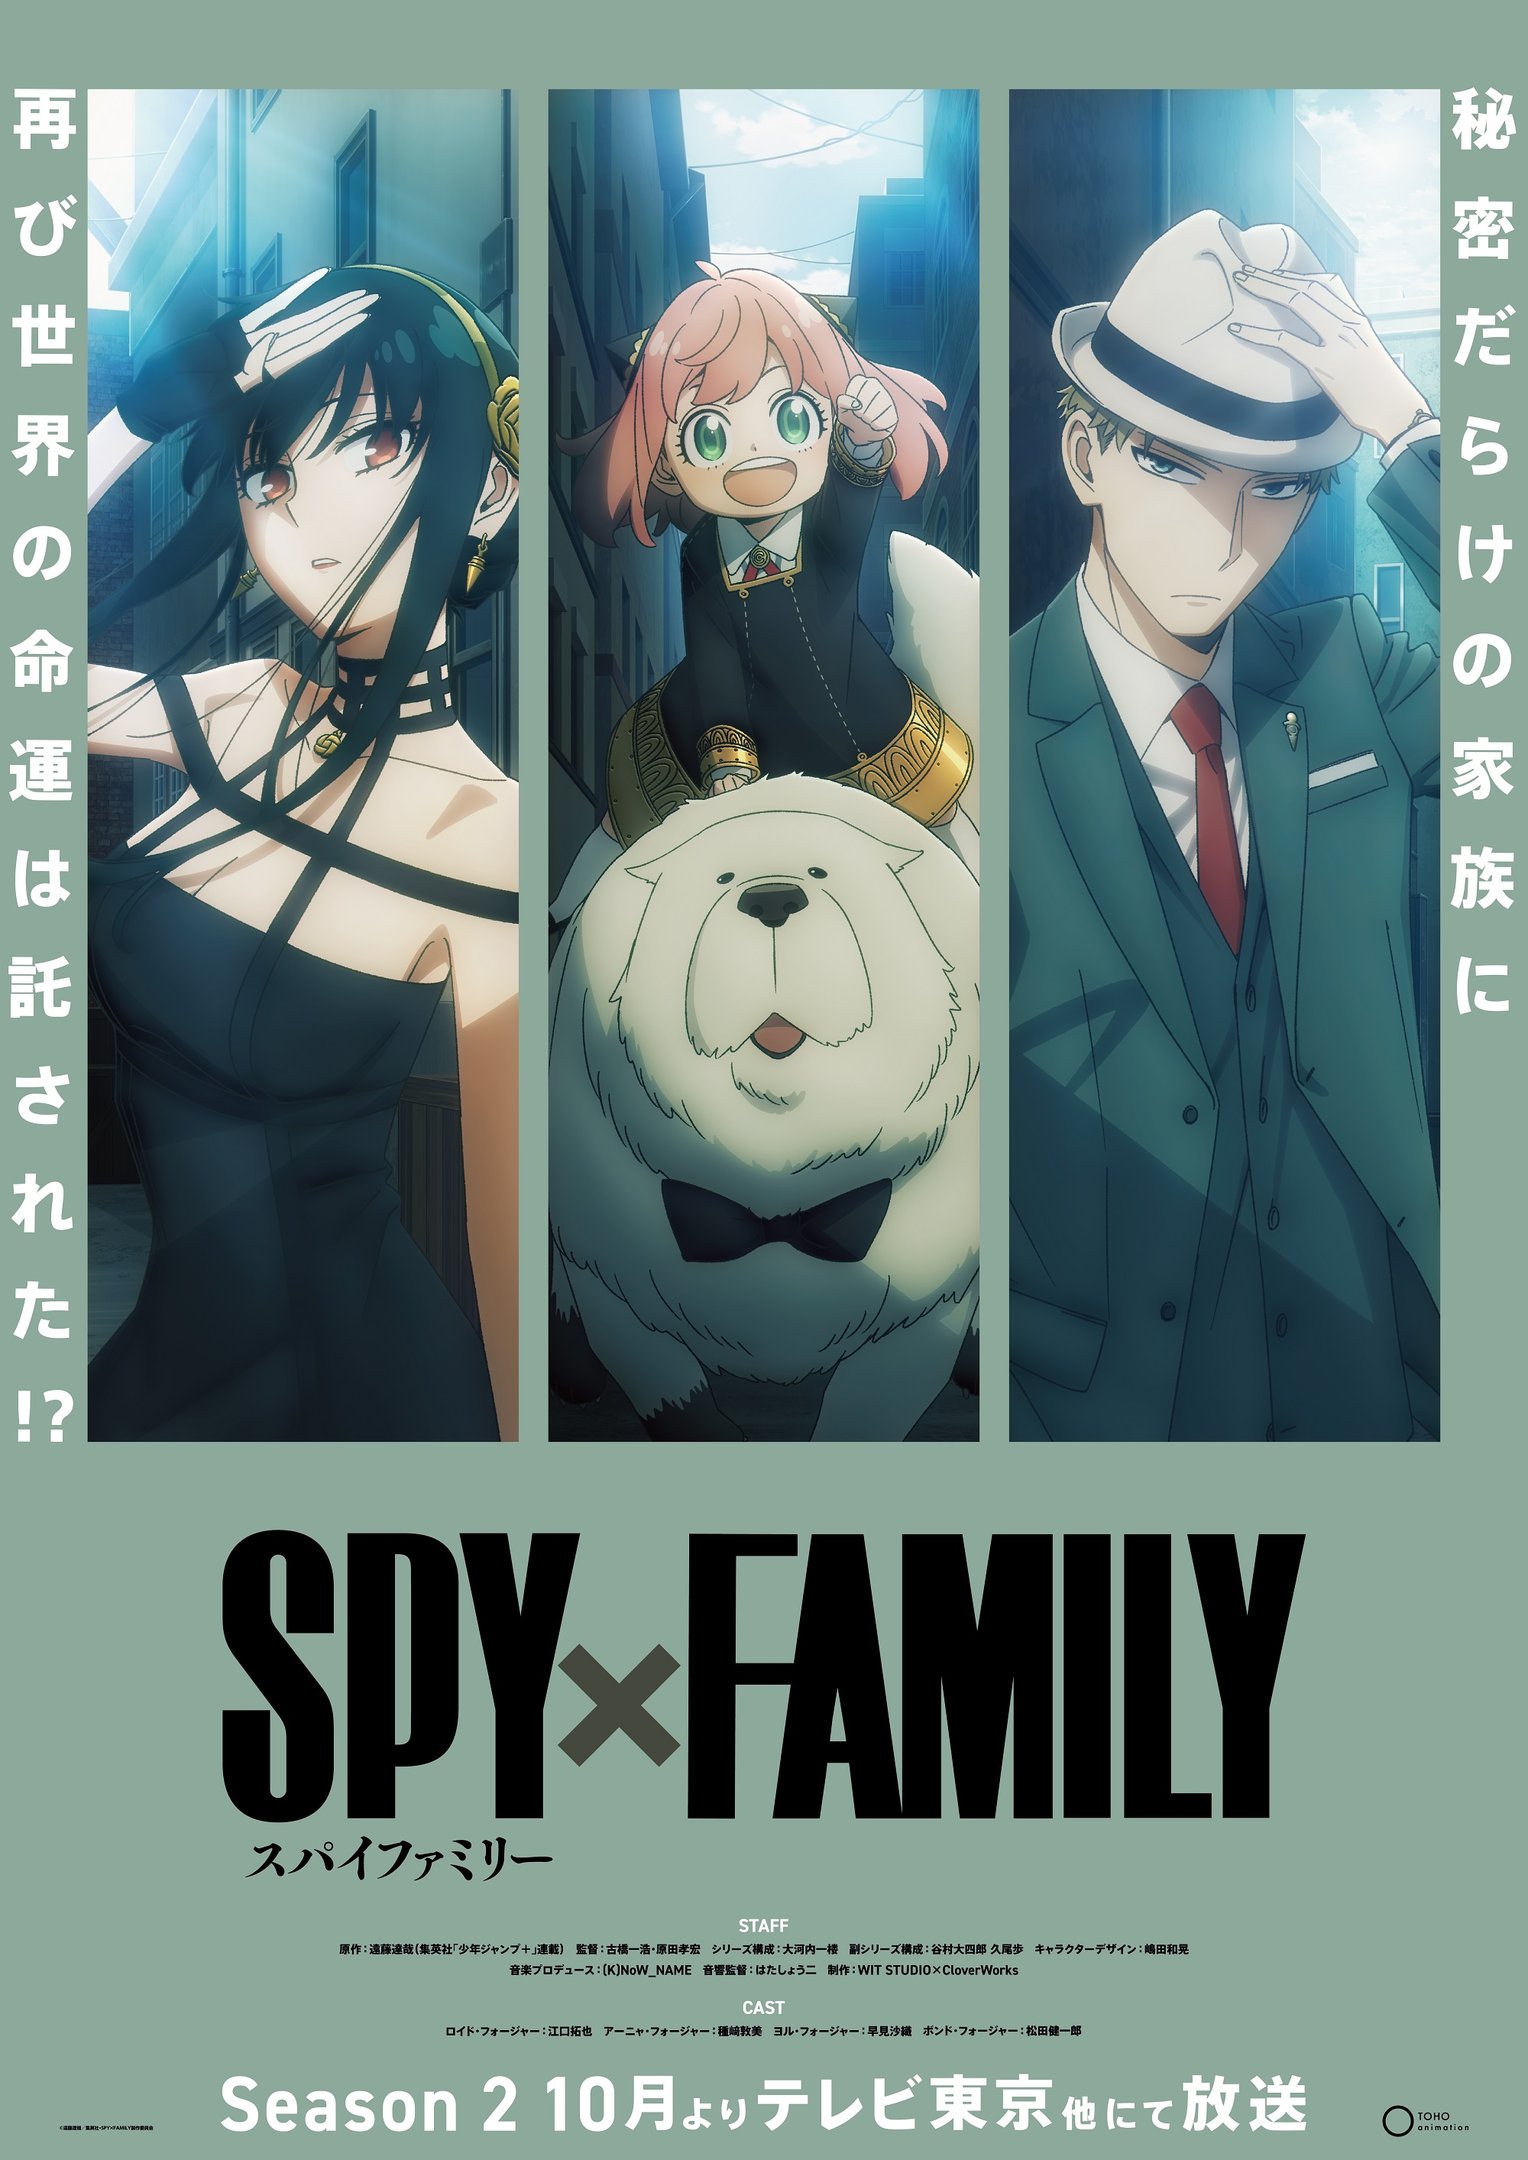 Filme de Spy x Family ganha data; 2ª temporada chega em outubro